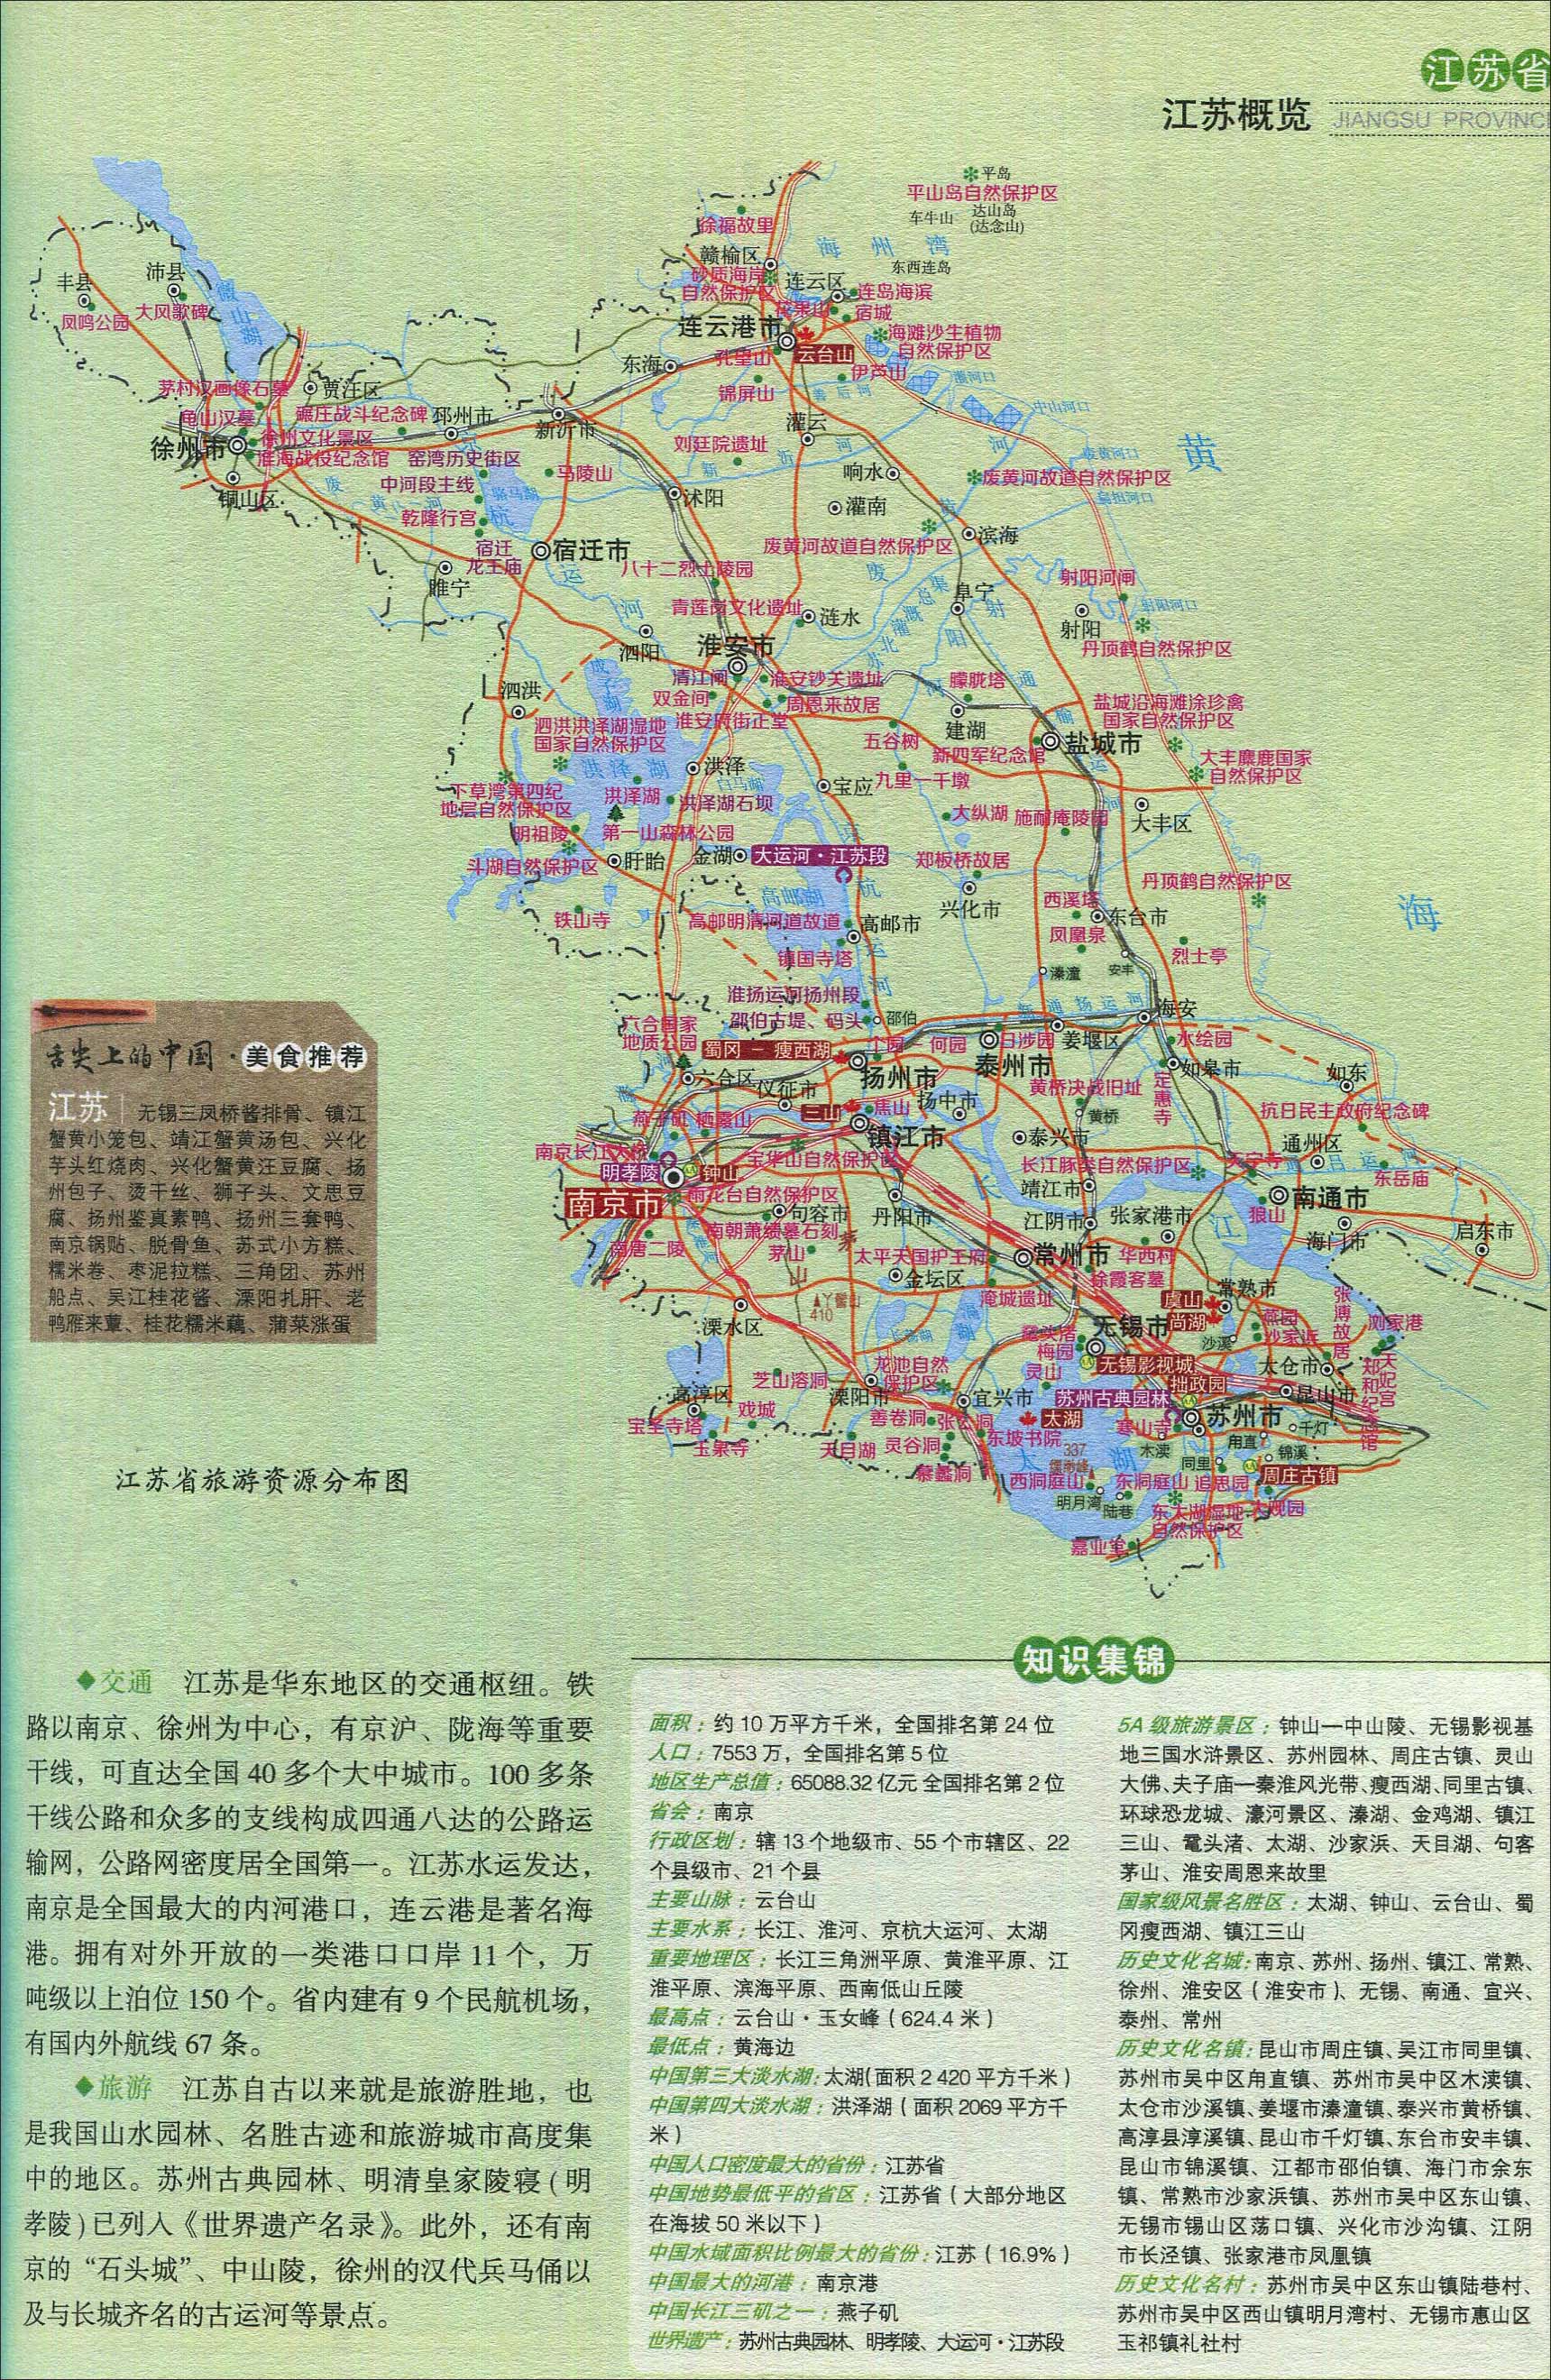 江苏旅游资源分布图_江苏景点地图库